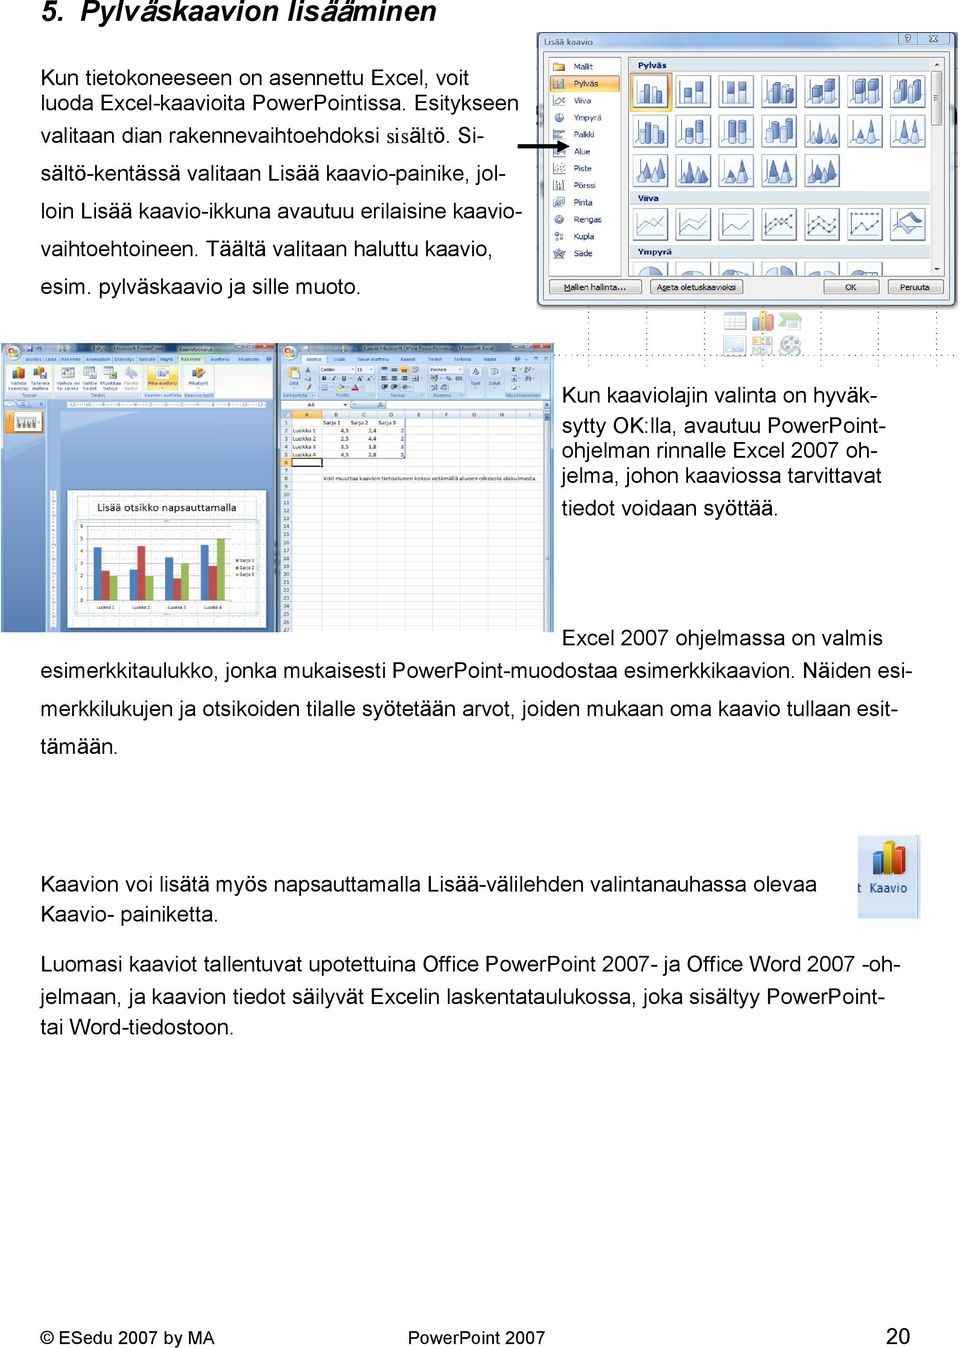 Kun kaaviolajin valinta on hyväksytty OK:lla, avautuu PowerPointohjelman rinnalle Excel 2007 ohjelma, johon kaaviossa tarvittavat tiedot voidaan syöttää.